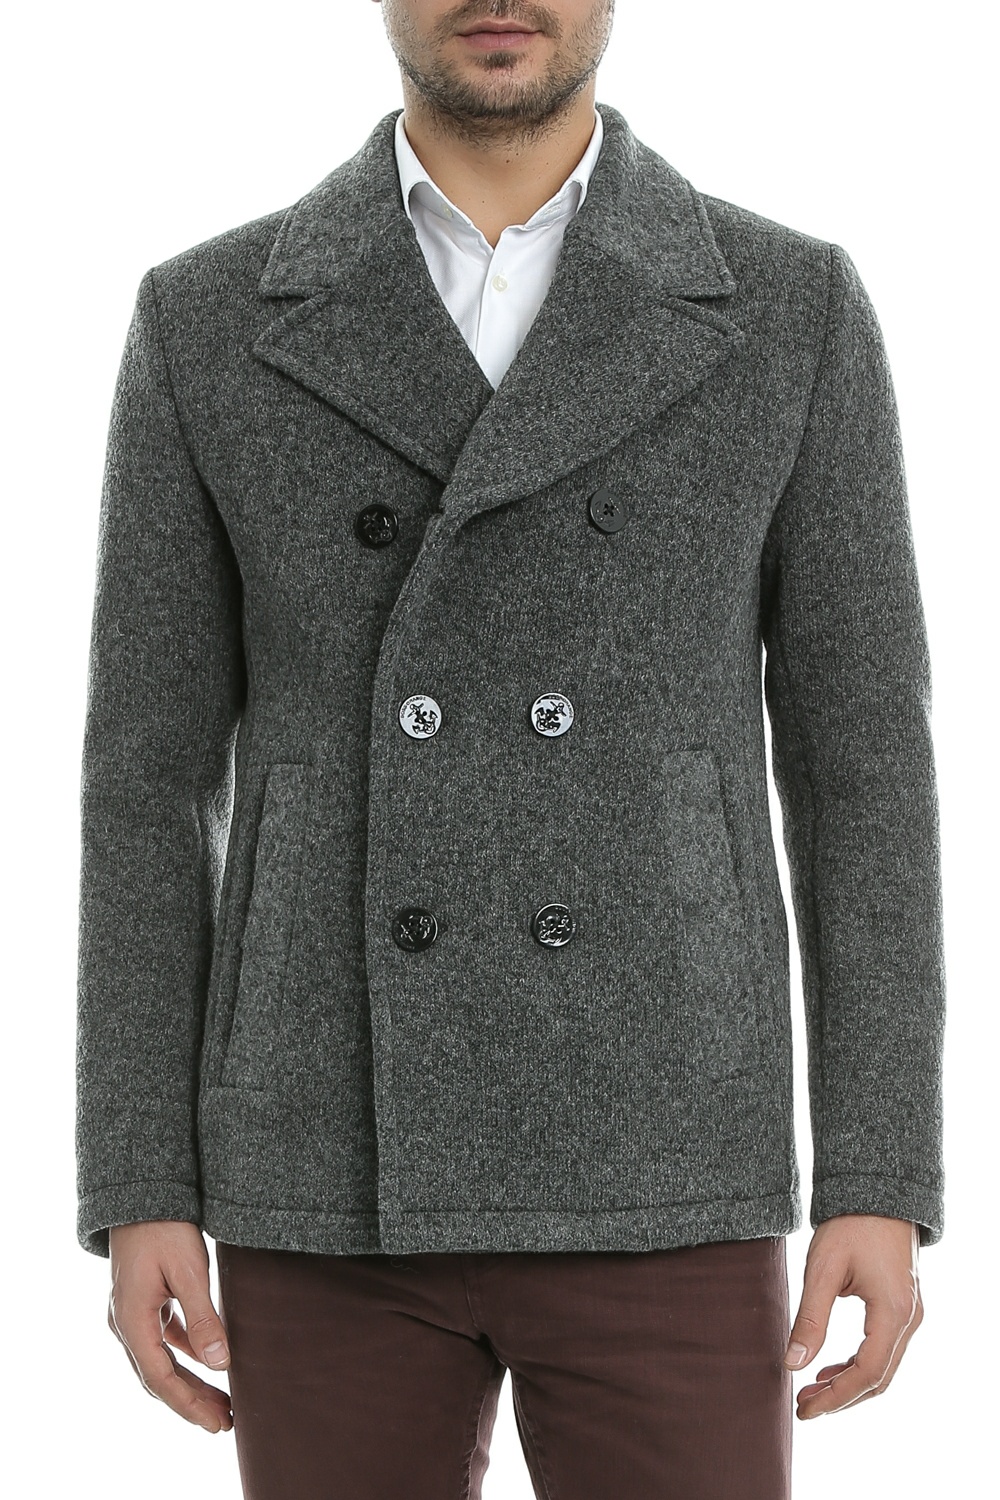 Ανδρικά/Ρούχα/Πανωφόρια/Παλτό BOSS - Ανδρικό παλτό BOSS Bennox γκρι